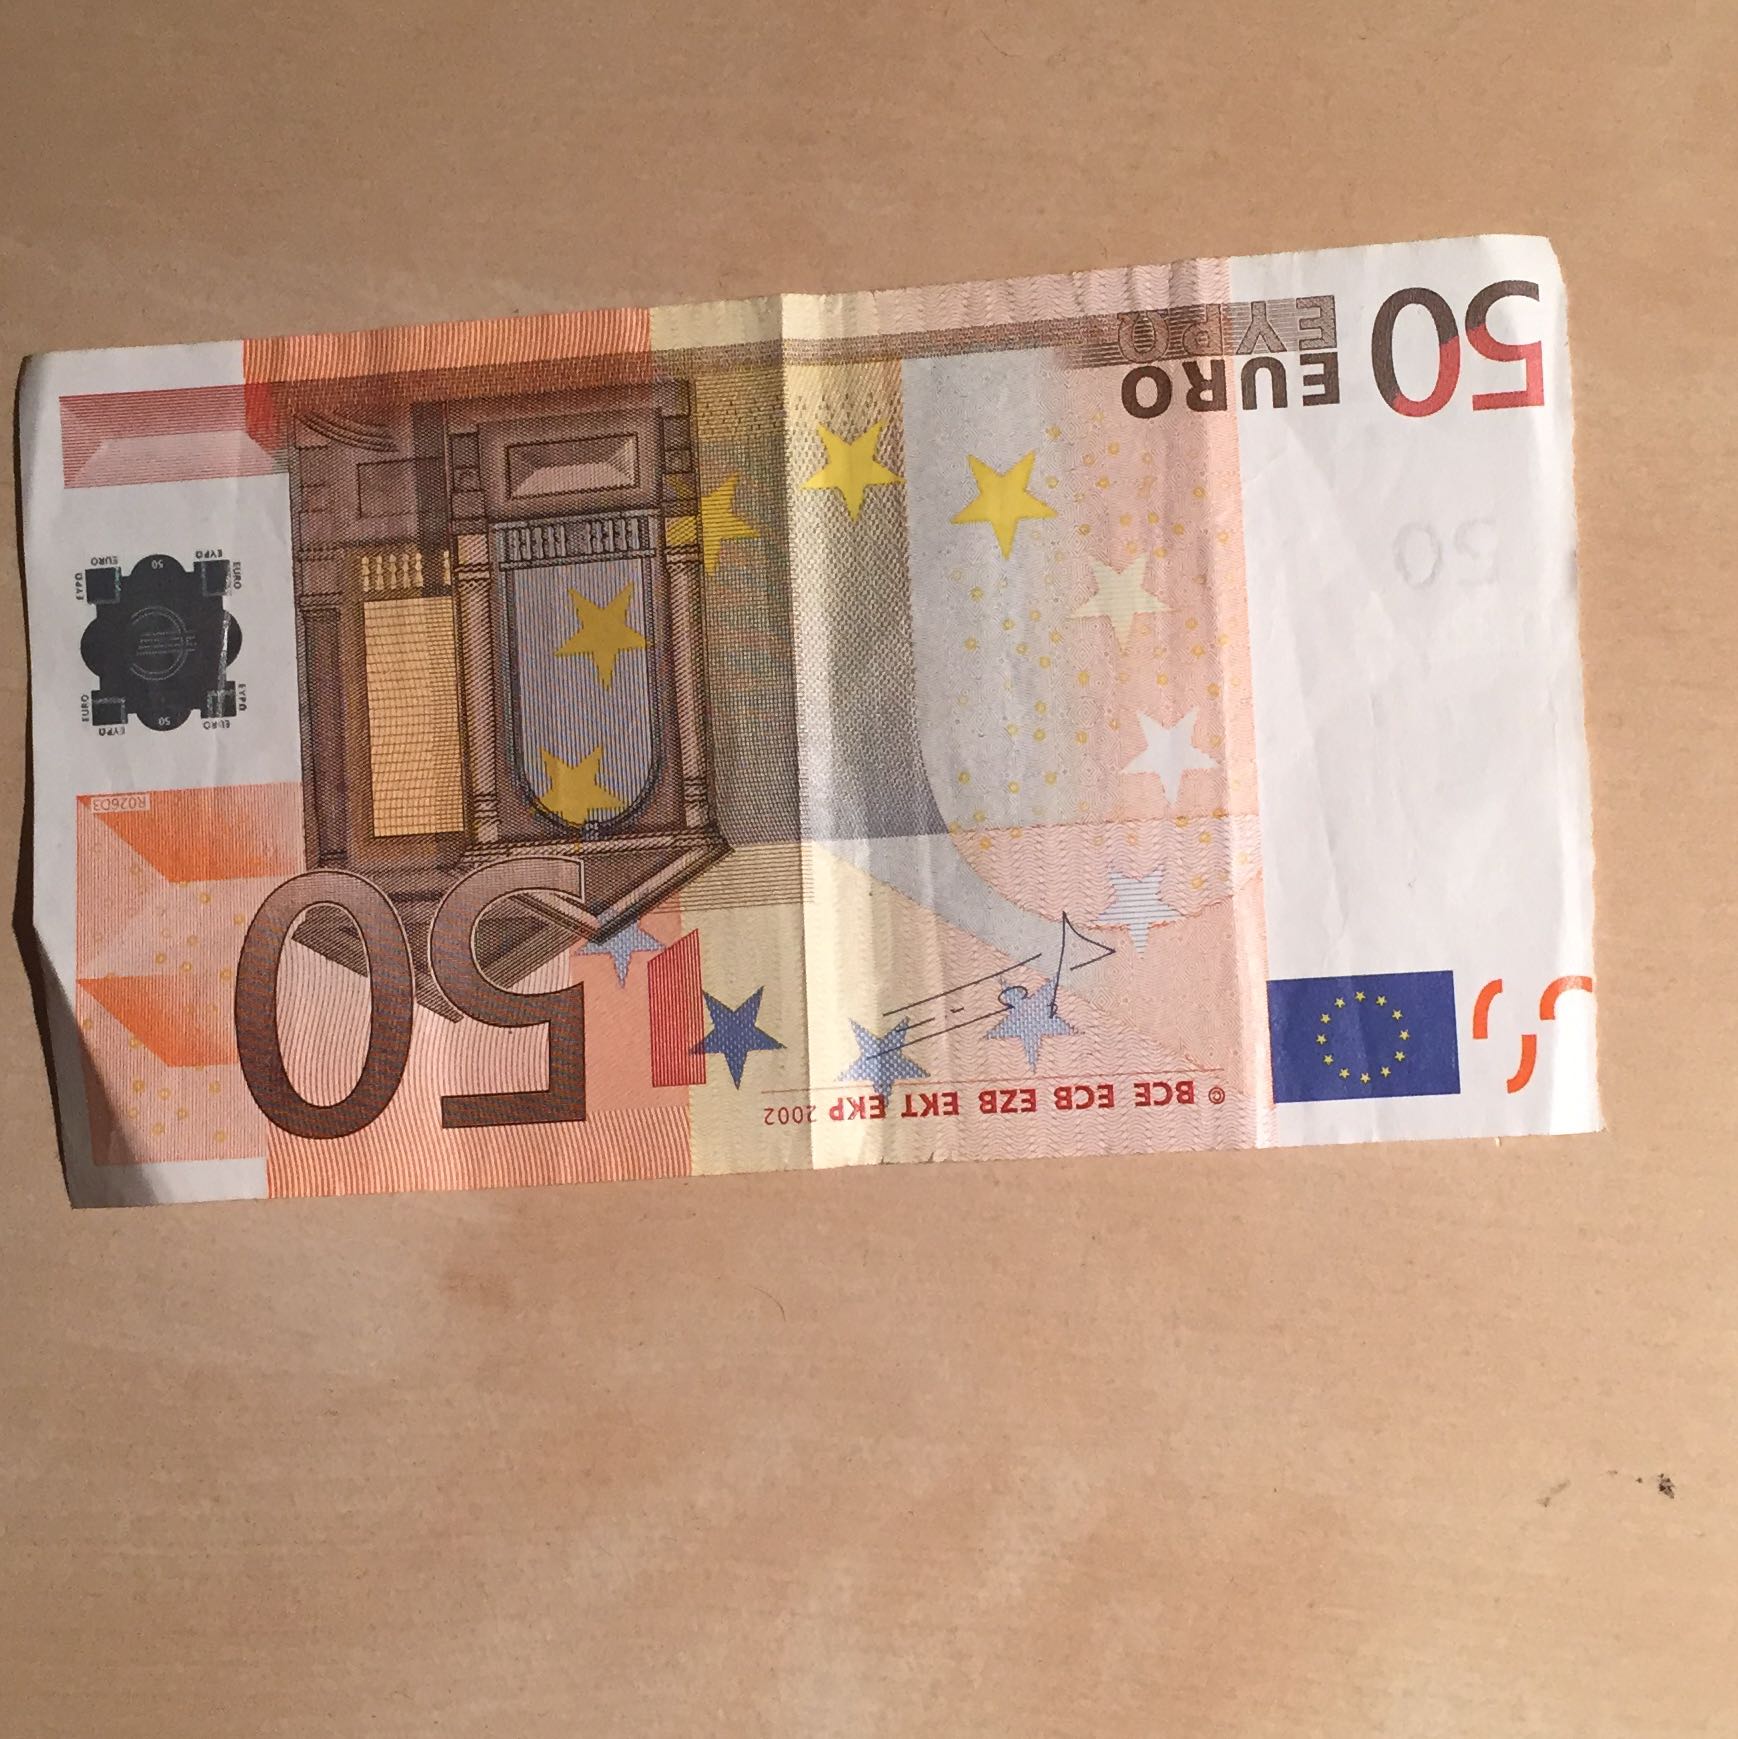 Ist dieser 50 Euro Schein gültig? (Geld)